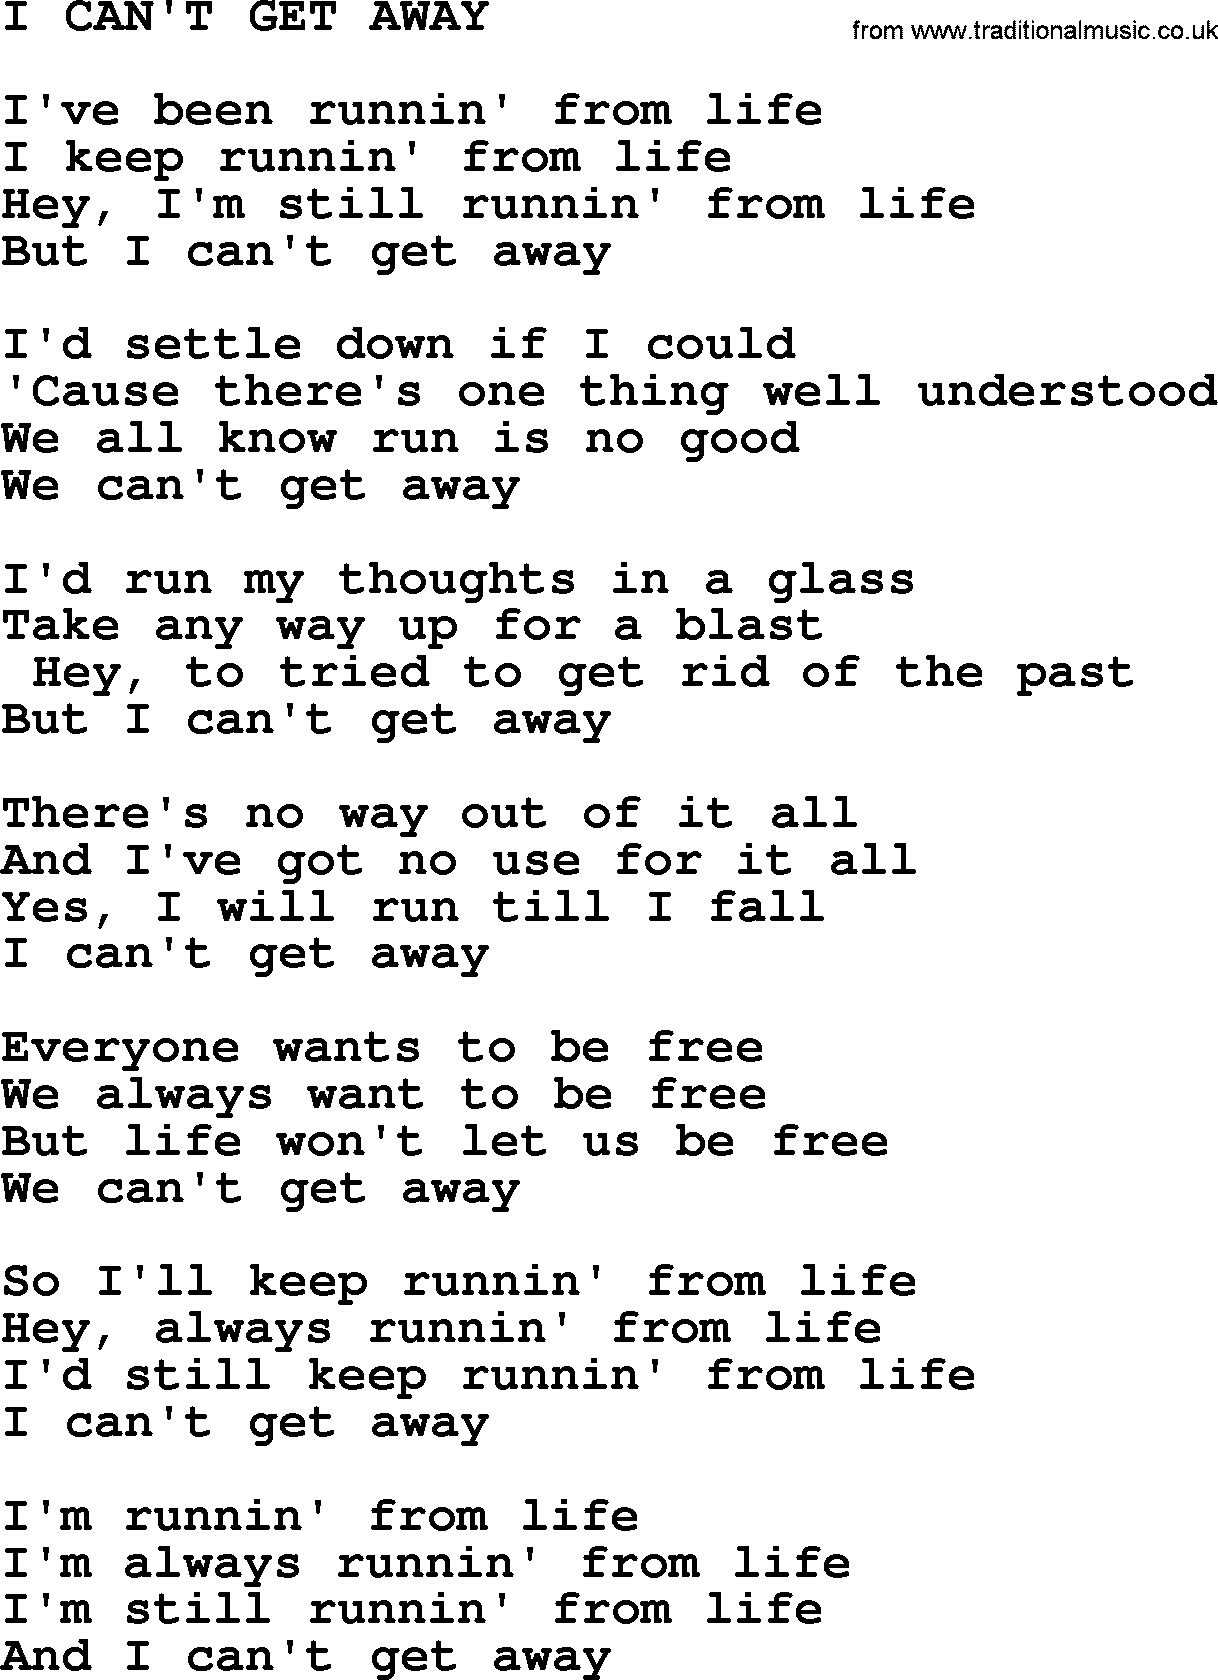 Merle Haggard song: I Can't Get Away, lyrics.